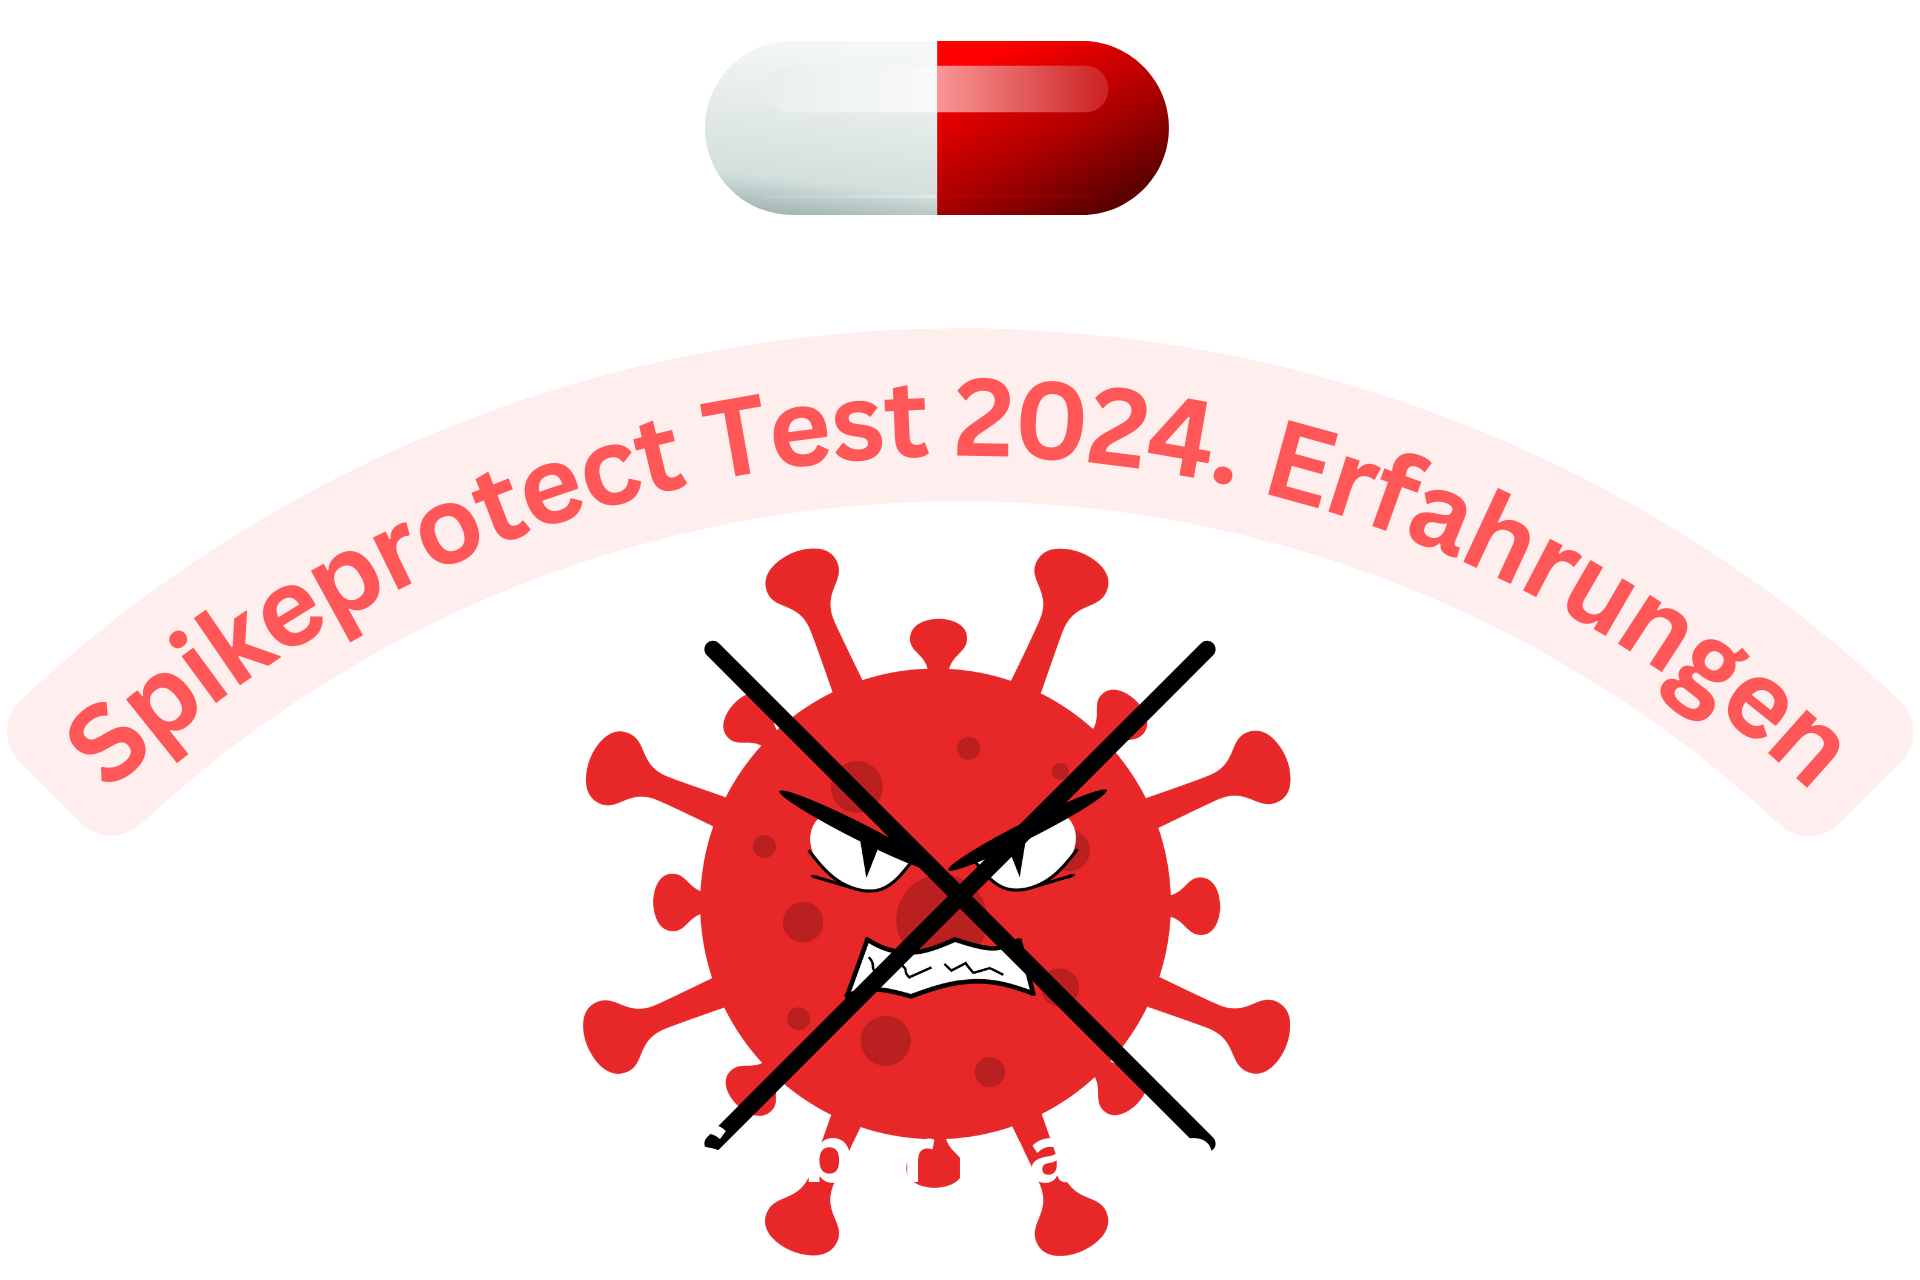 Spikeprotect Test 2024. Erfahrungen